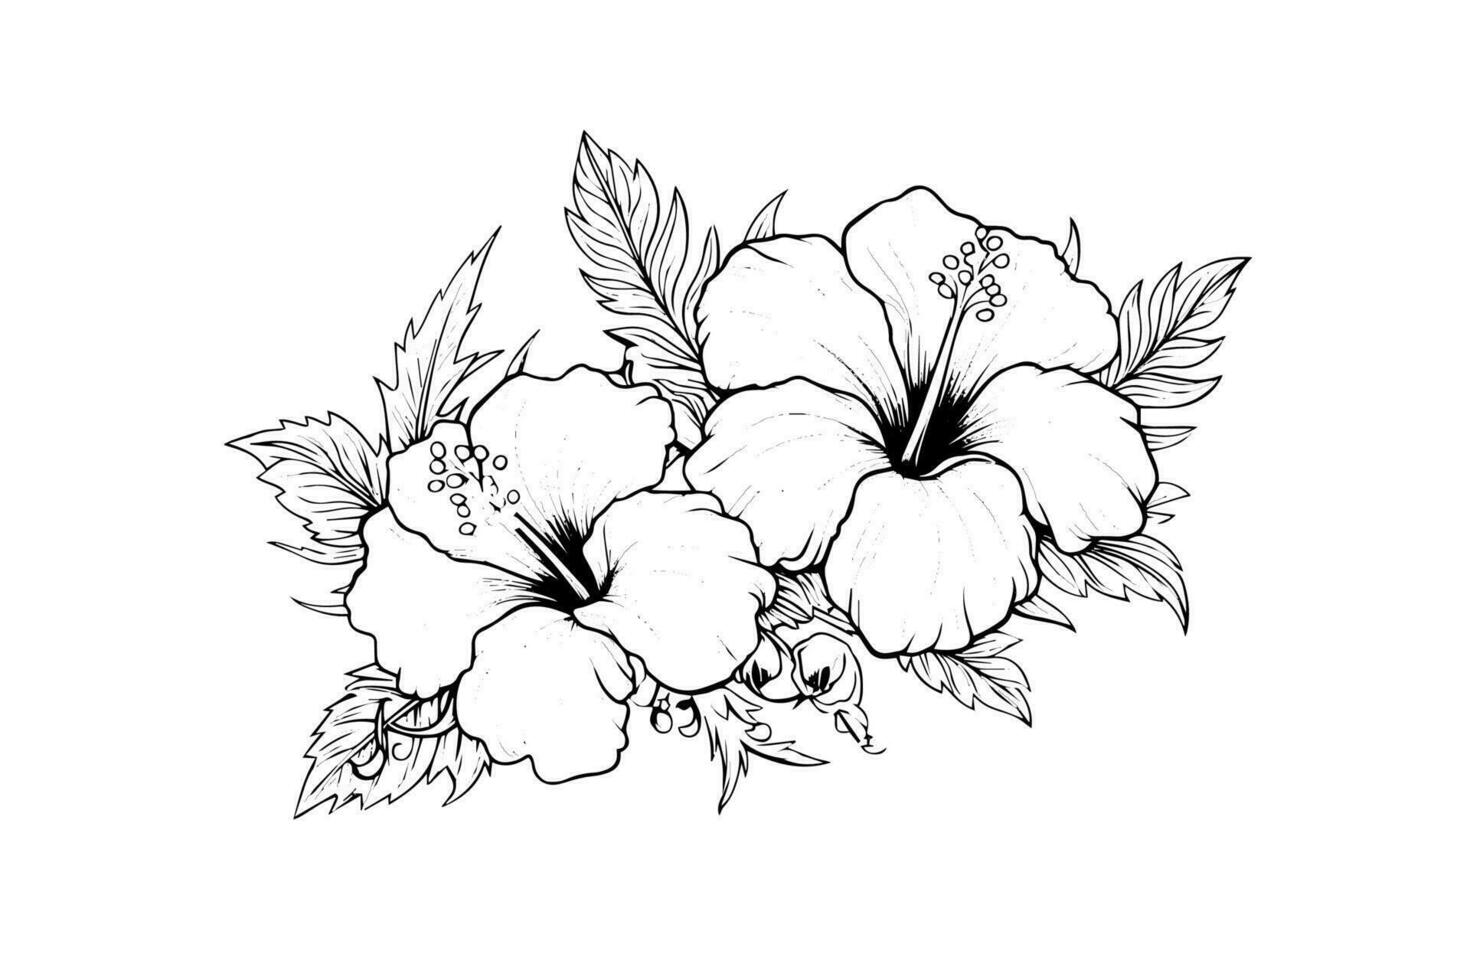 hibiskus blommor i en årgång träsnitt graverat etsning stil. vektor illustration.